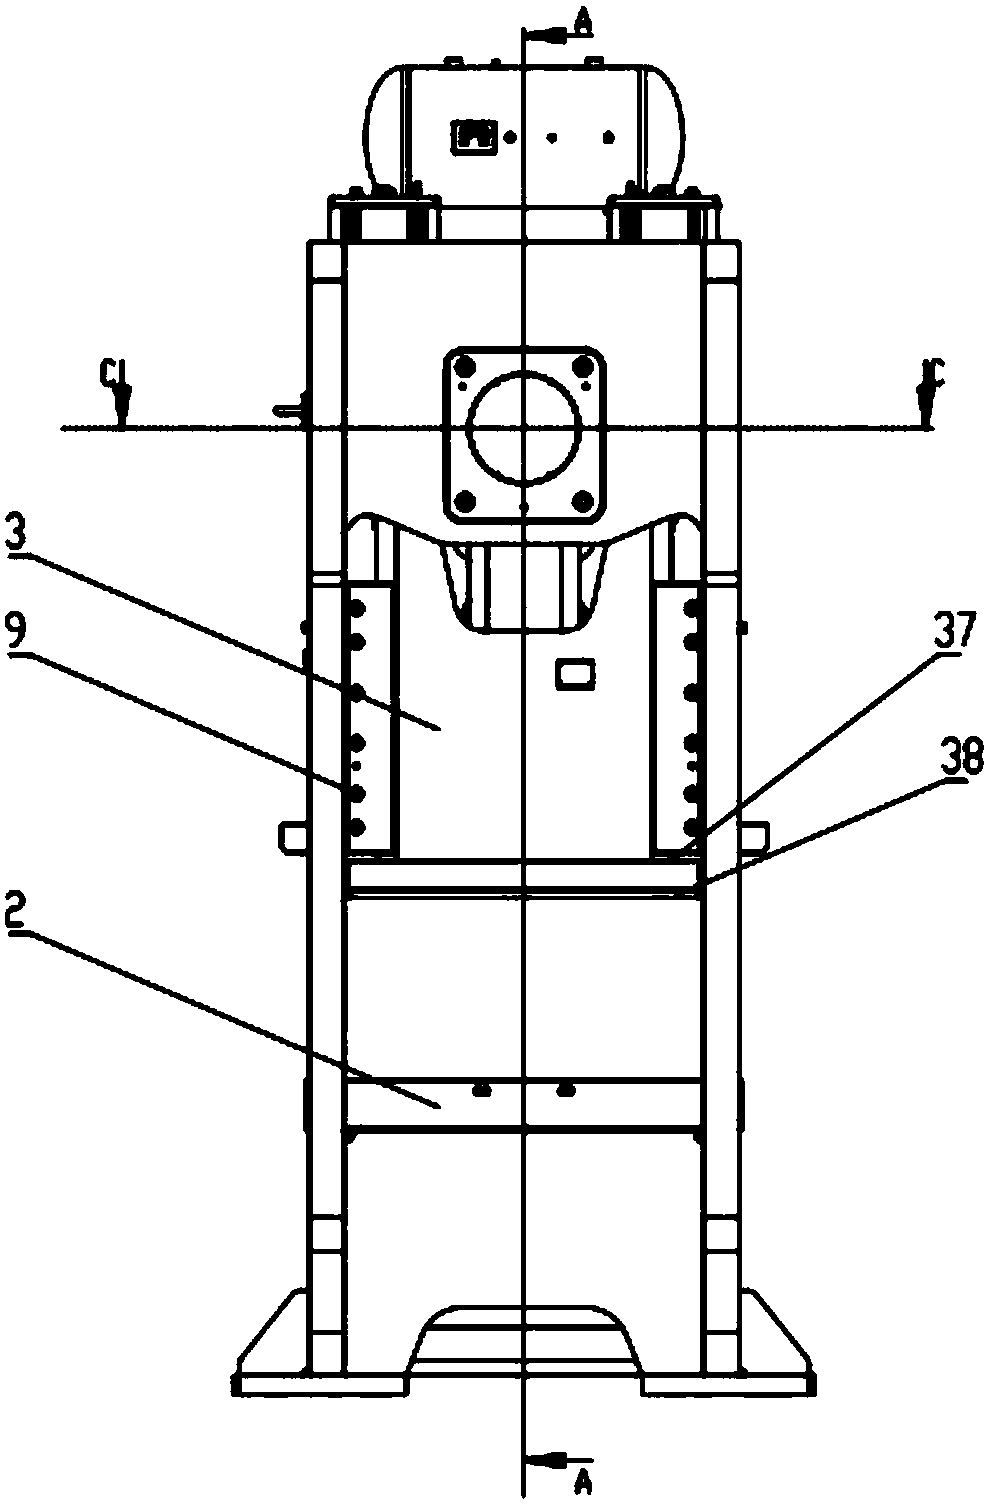 Semi-closed type press machine